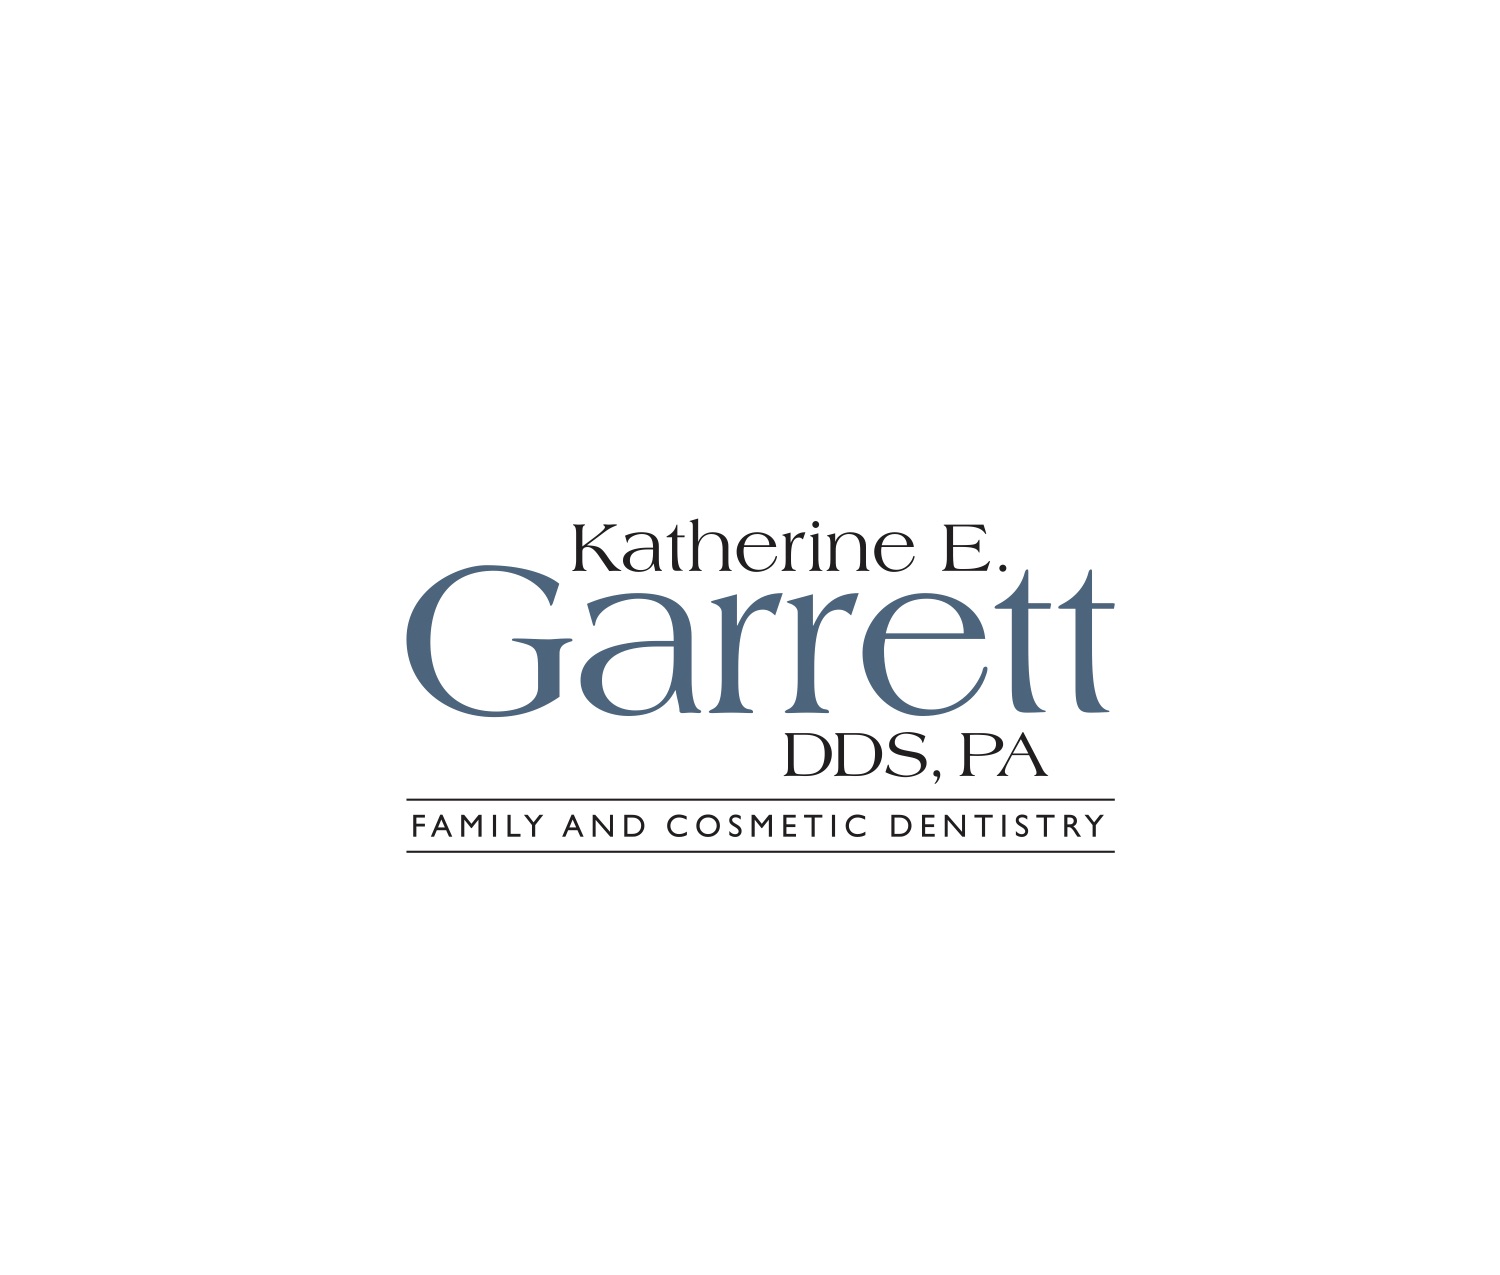 Sponsor Katherine E. Garrett DDS, PA